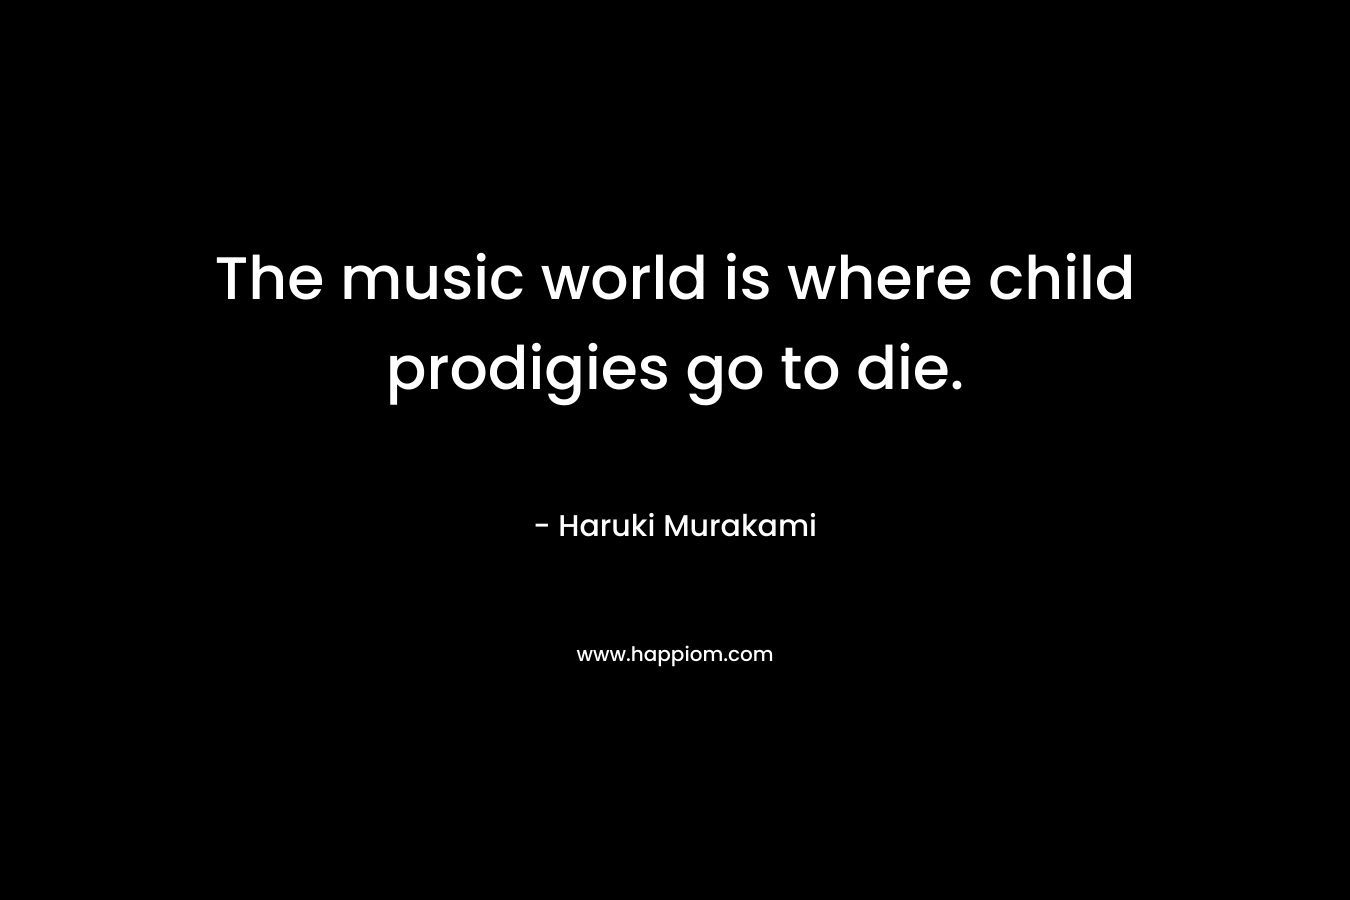 The music world is where child prodigies go to die. – Haruki Murakami